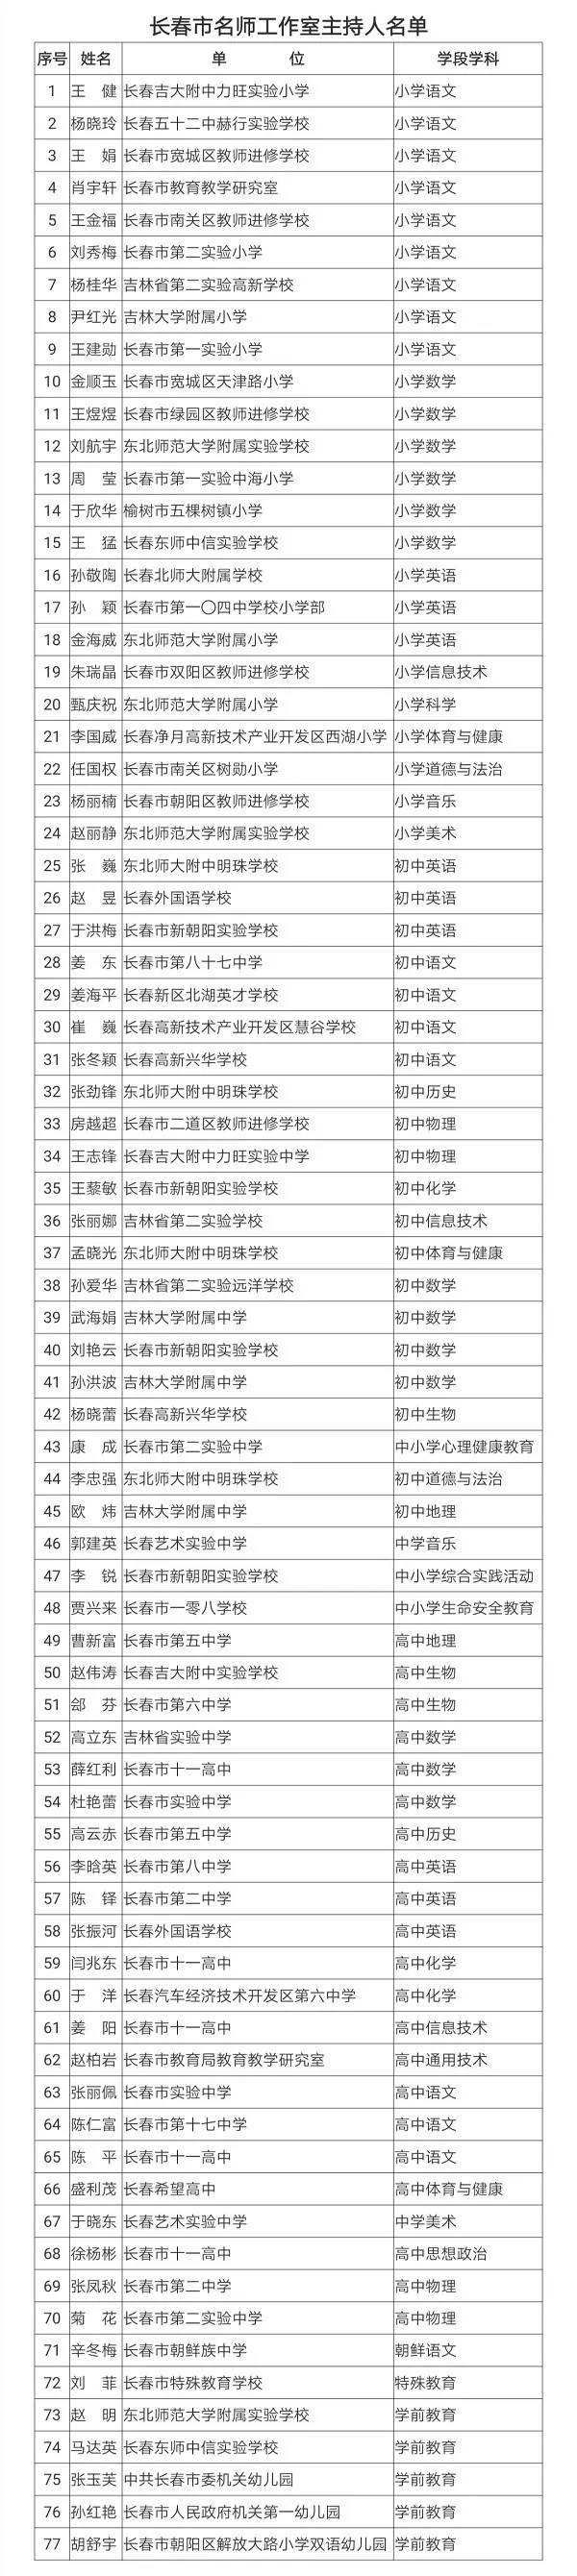 长春市教育局公布新一轮“名师工作室主持人”名单